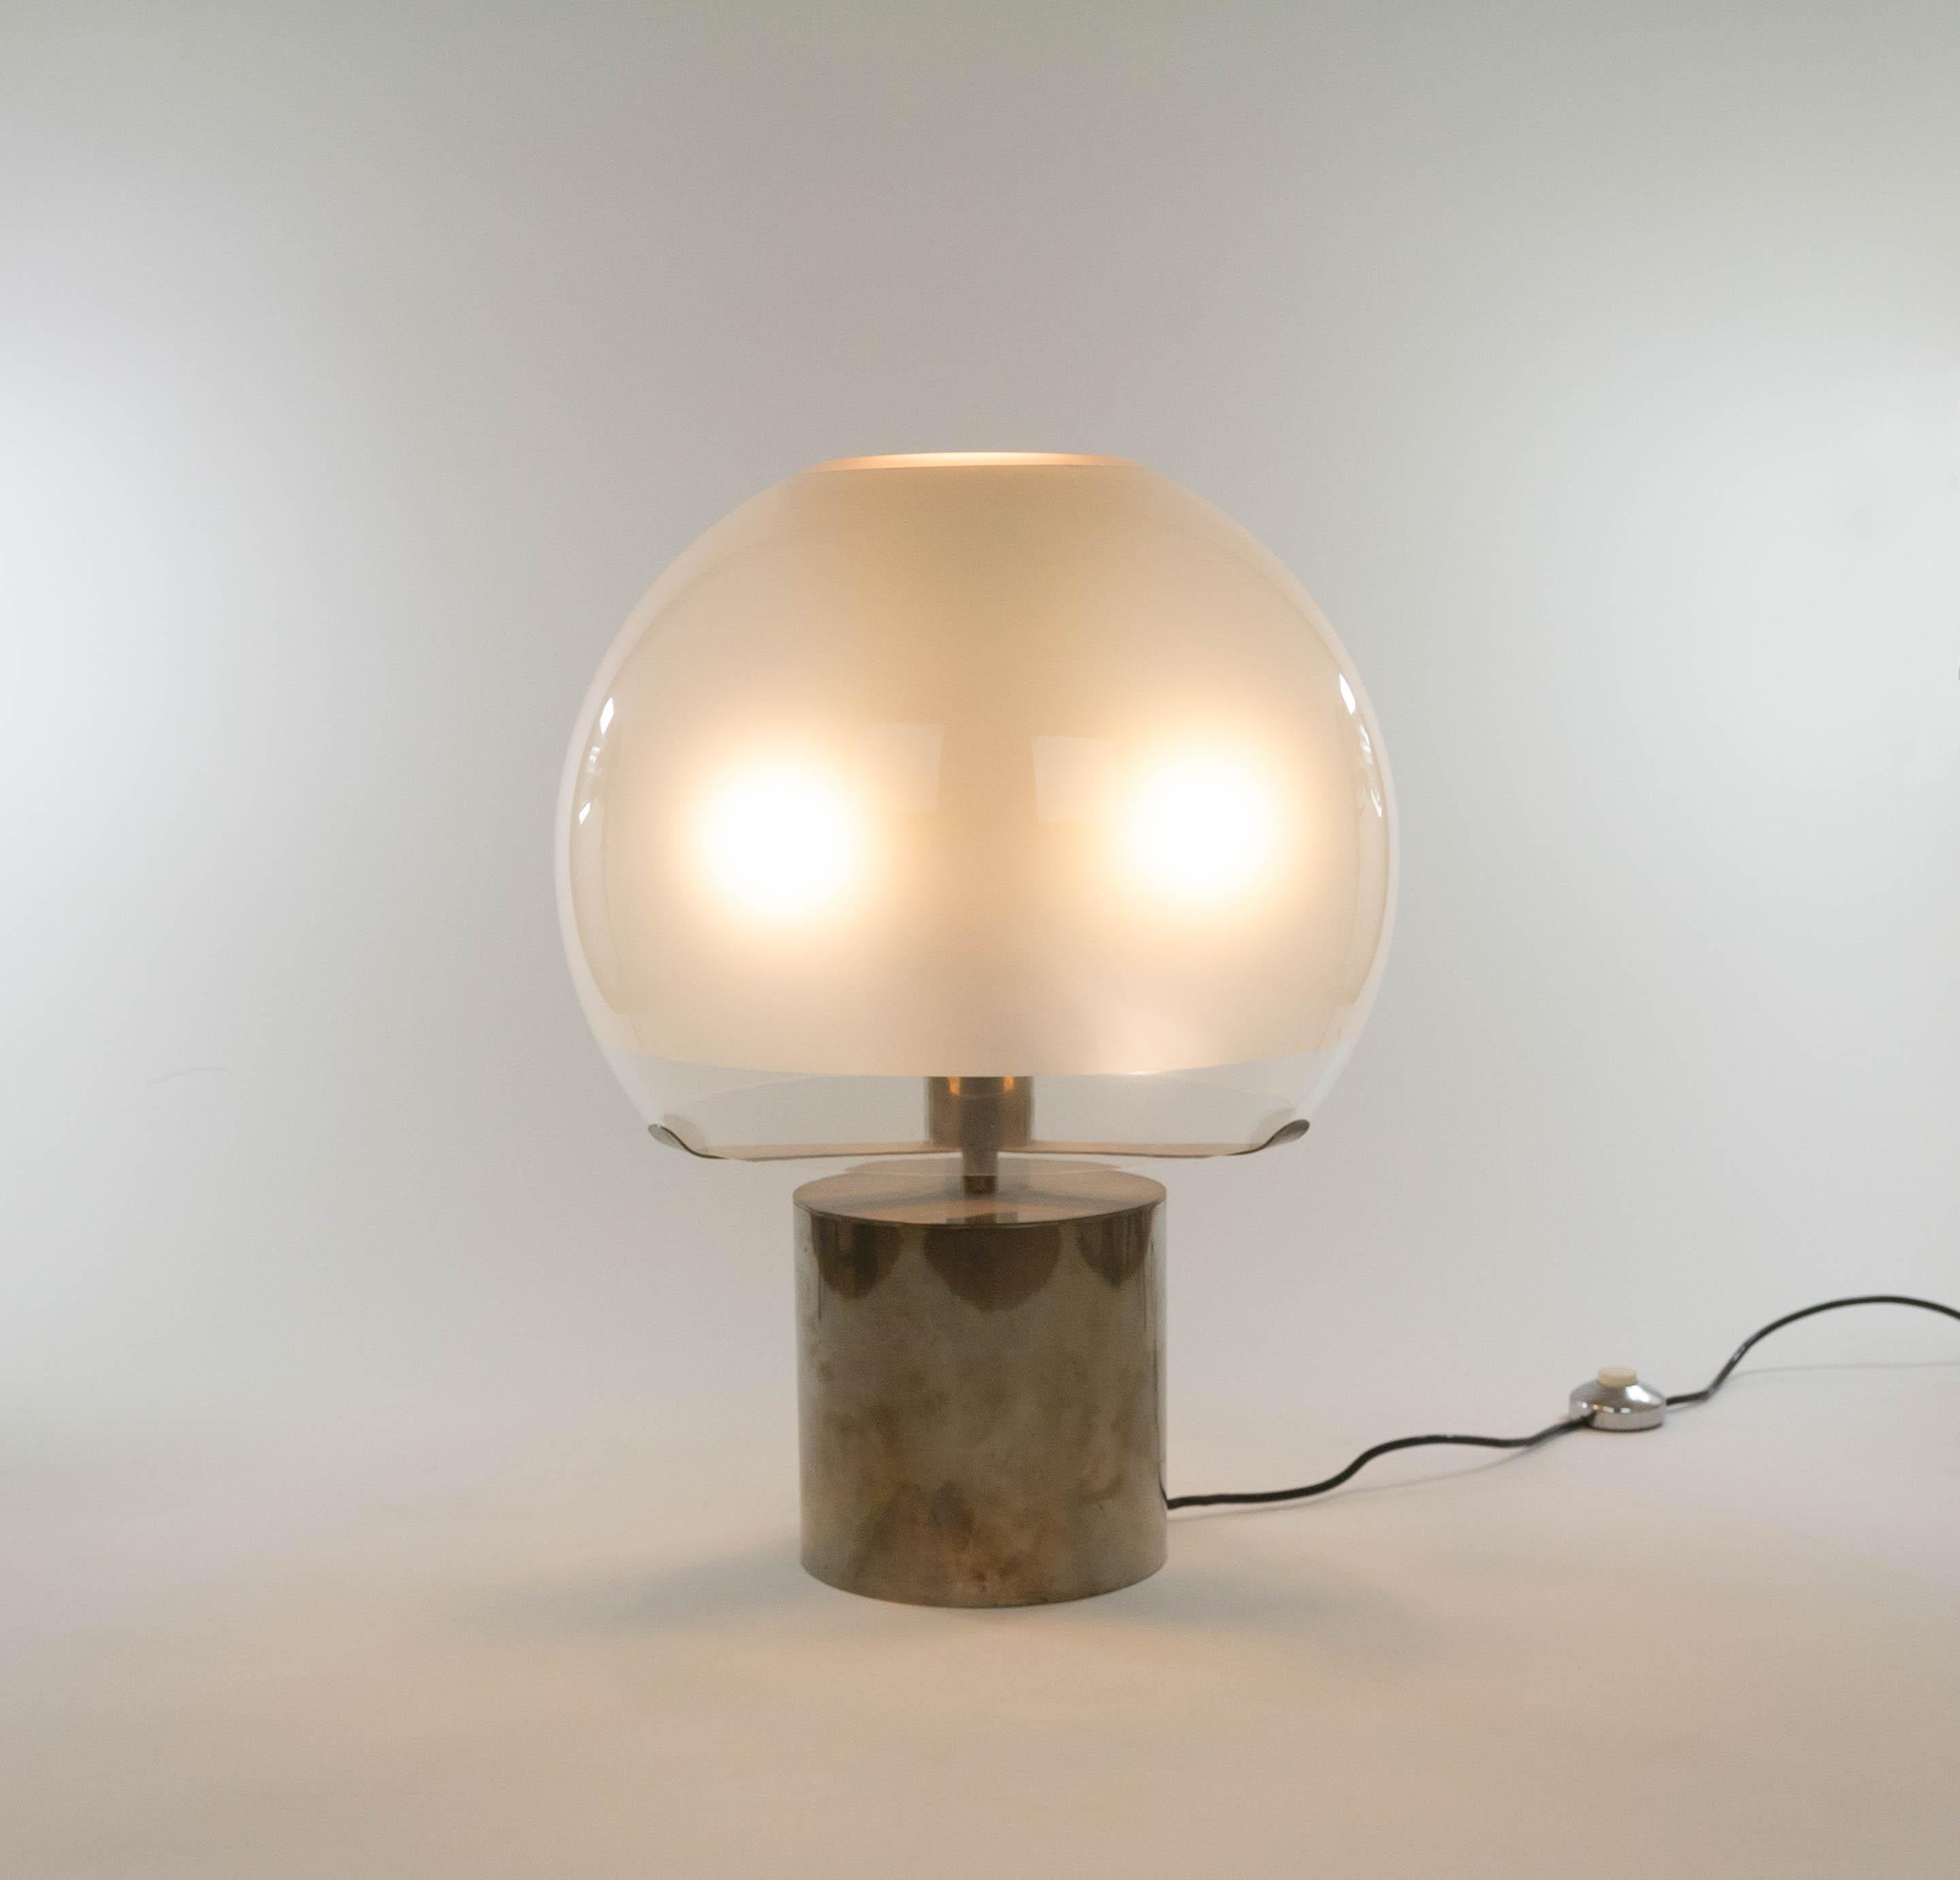 Lampe de table ou lampadaire Porcino conçue par Luigi Caccia Dominioni et fabriquée par Azucena, 1966. Une pièce classique et intemporelle.

Lampe de table avec base cylindrique en métal magnifiquement patiné, qui supporte un diffuseur en forme de